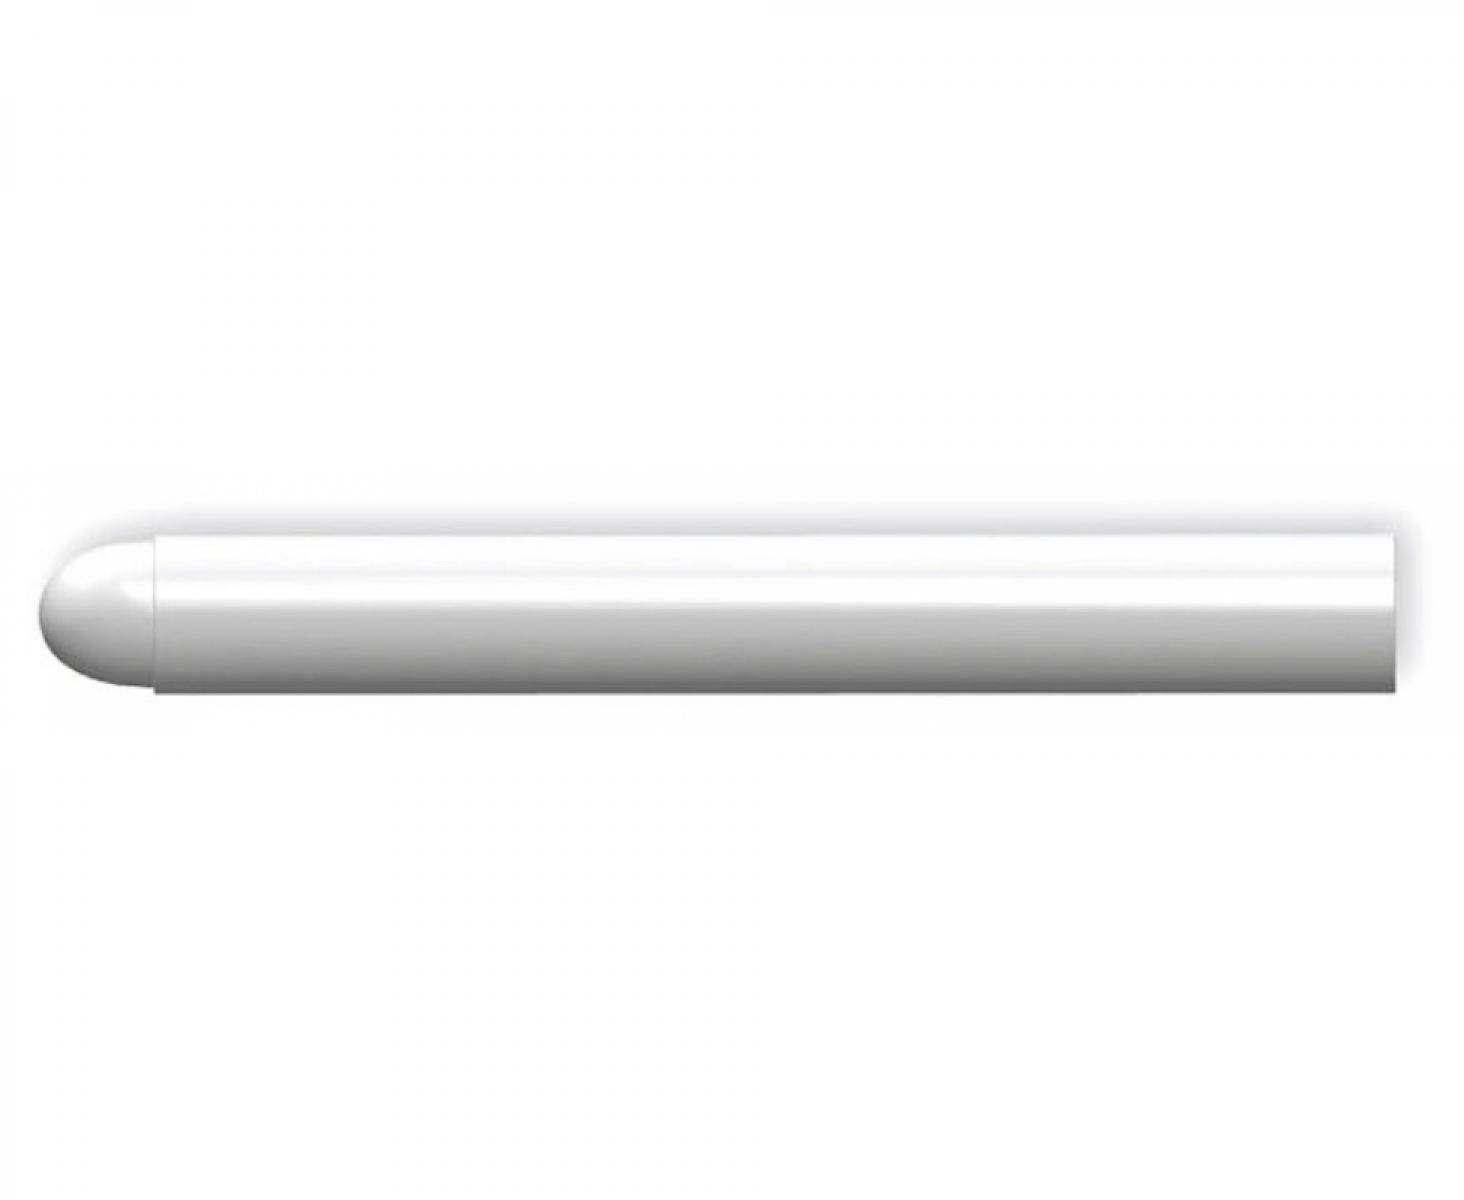 картинка Стержни сменные для Pica-Visor белые 991/52 4 шт. от магазина "Элит-инструмент"